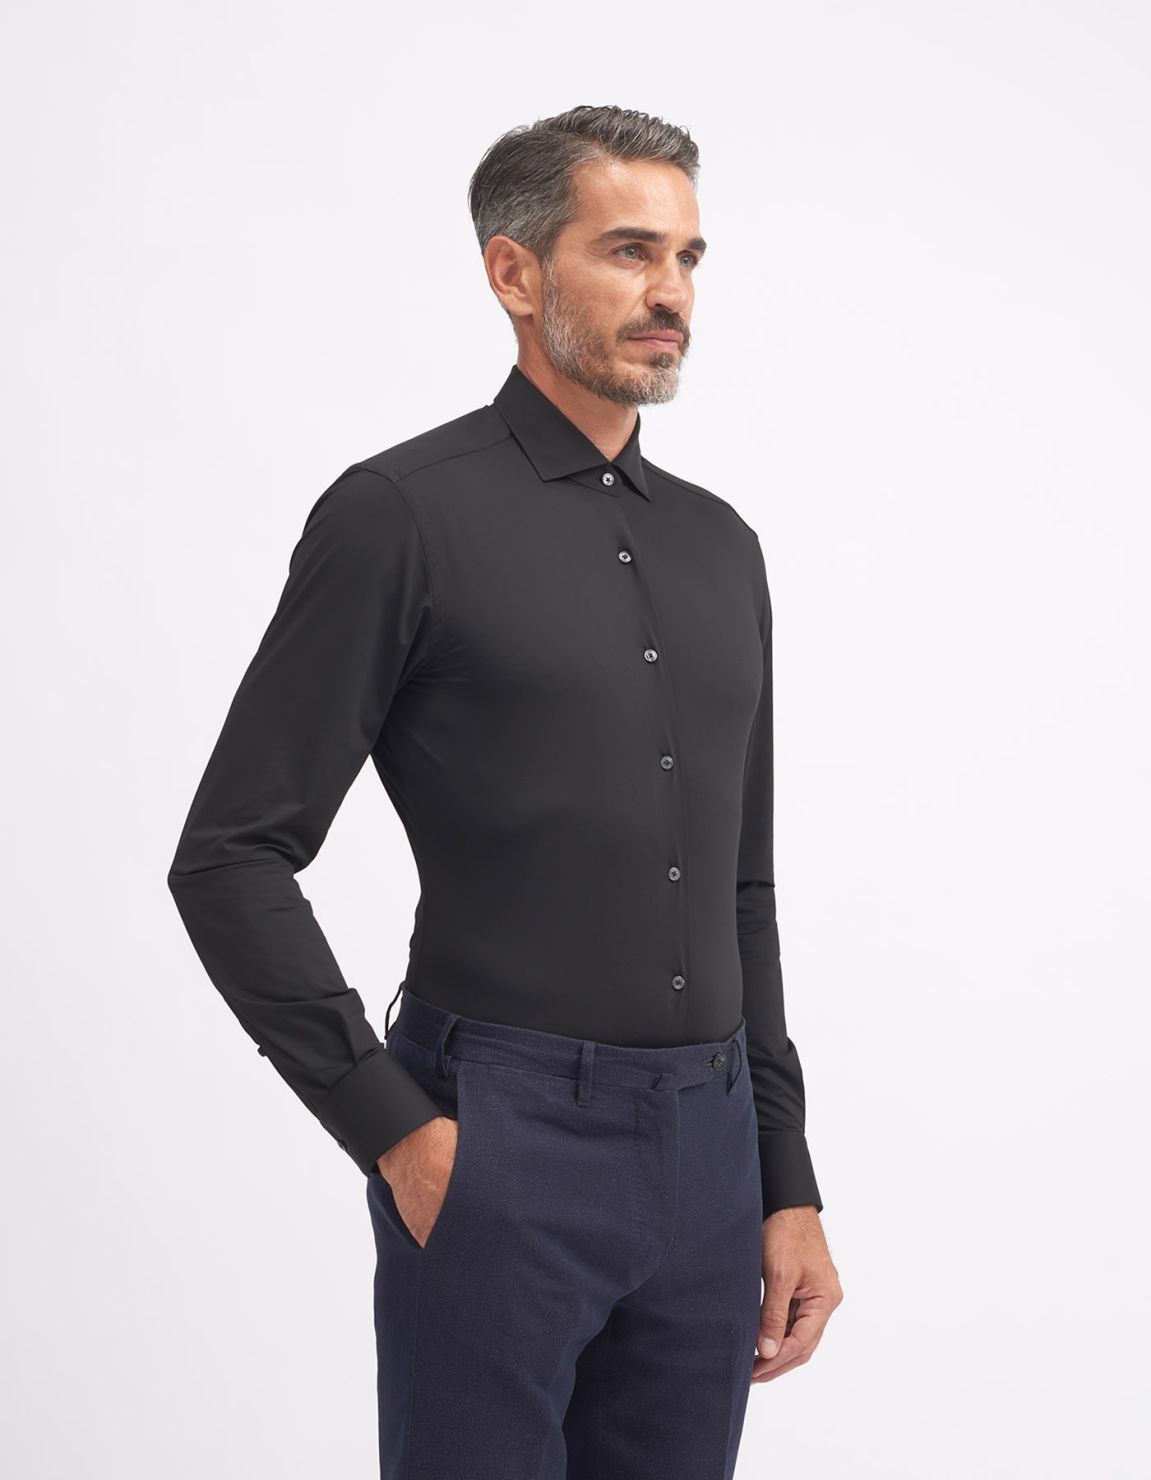 Shirt Collar small cutaway Black Twill Tailor Custom Fit 1